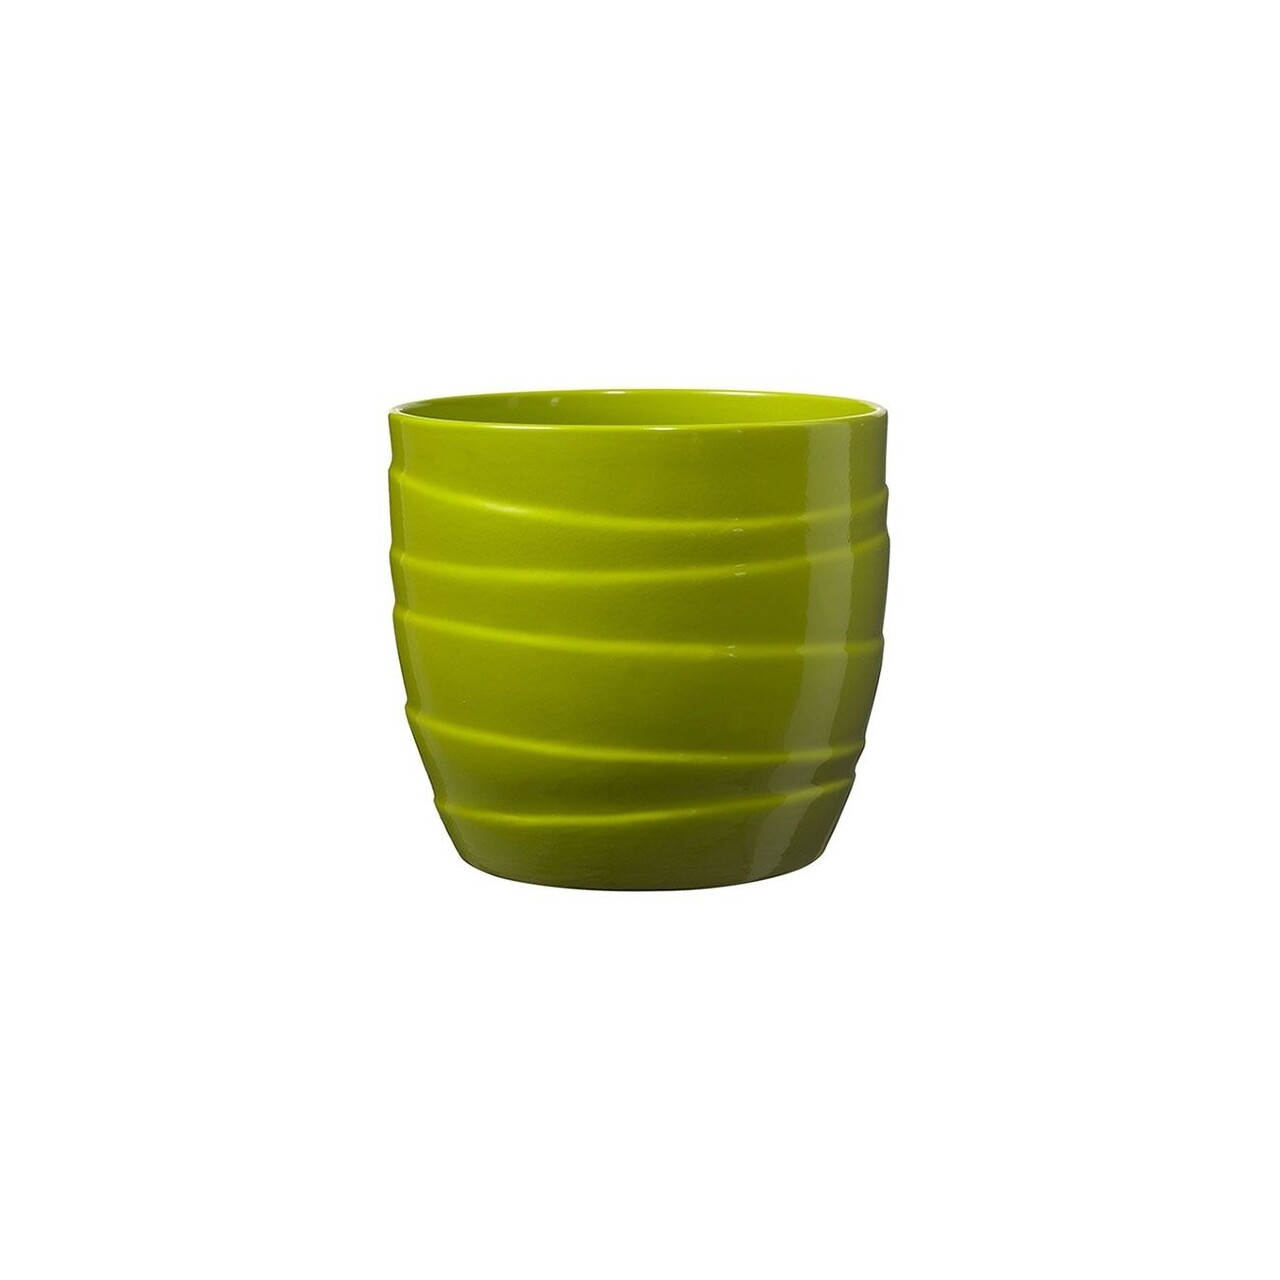 Ghiveci Barletta, ceramica, verde, 19 cm